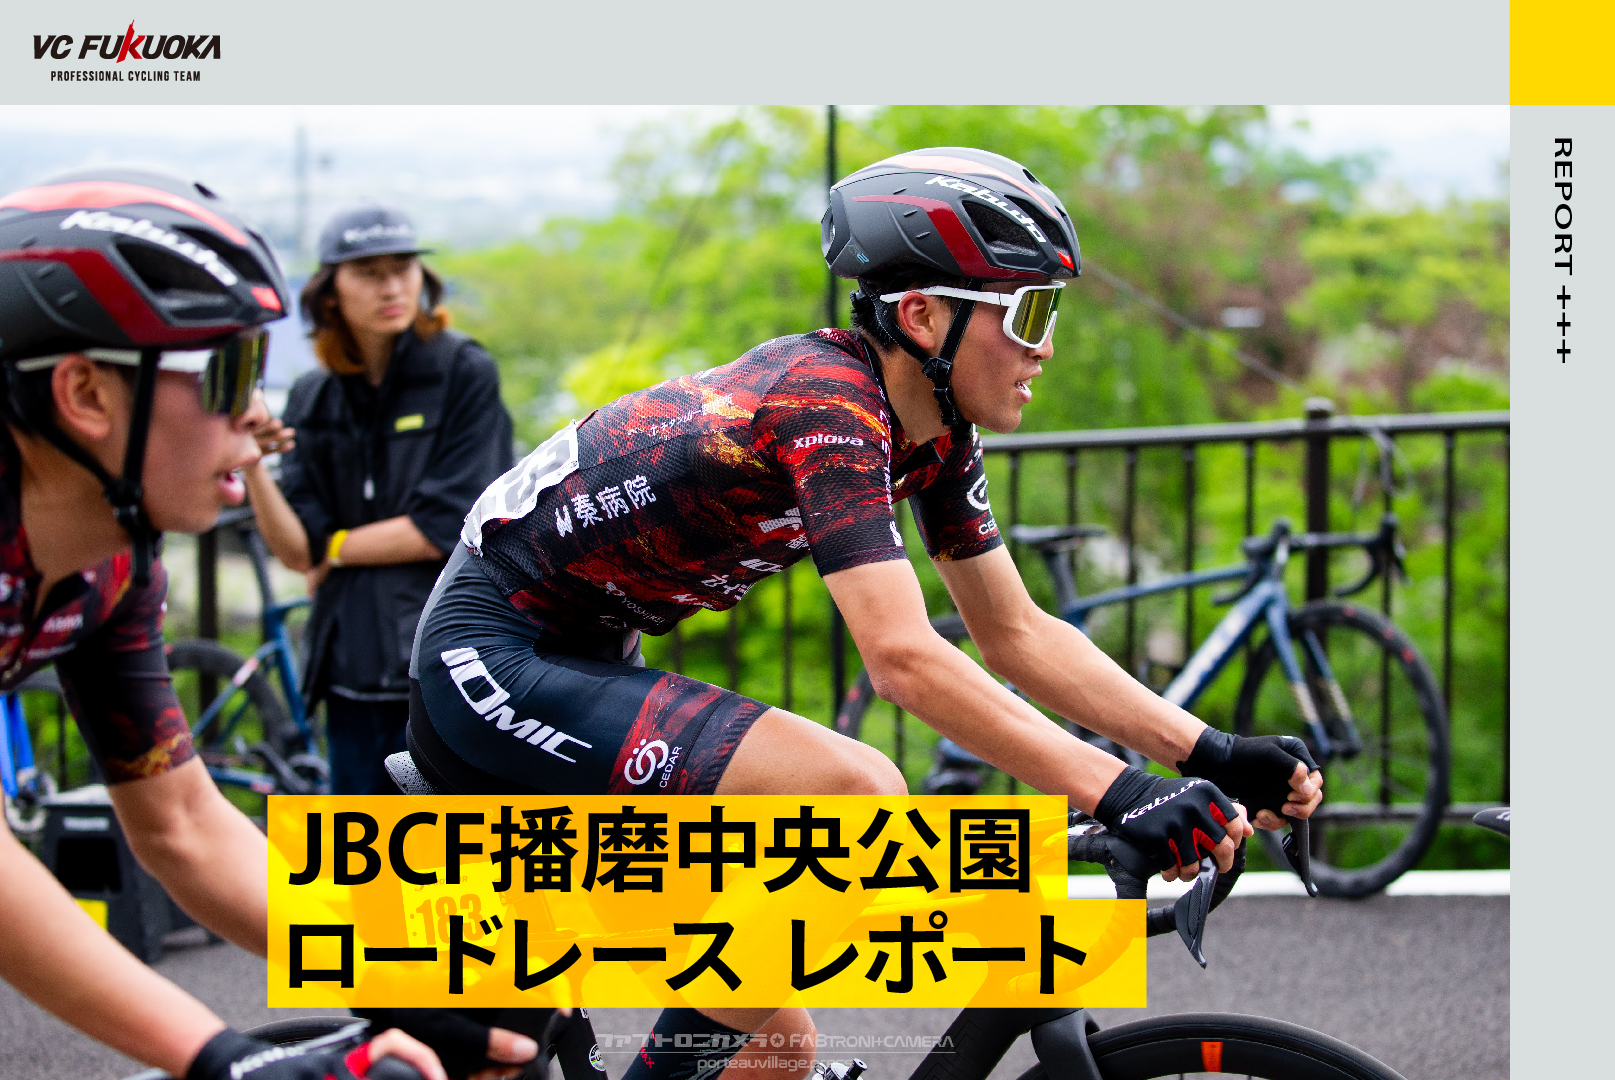 4/27-4/28 JBCF 播磨中央公園ロードレースDAY1 / DAY2 レポート